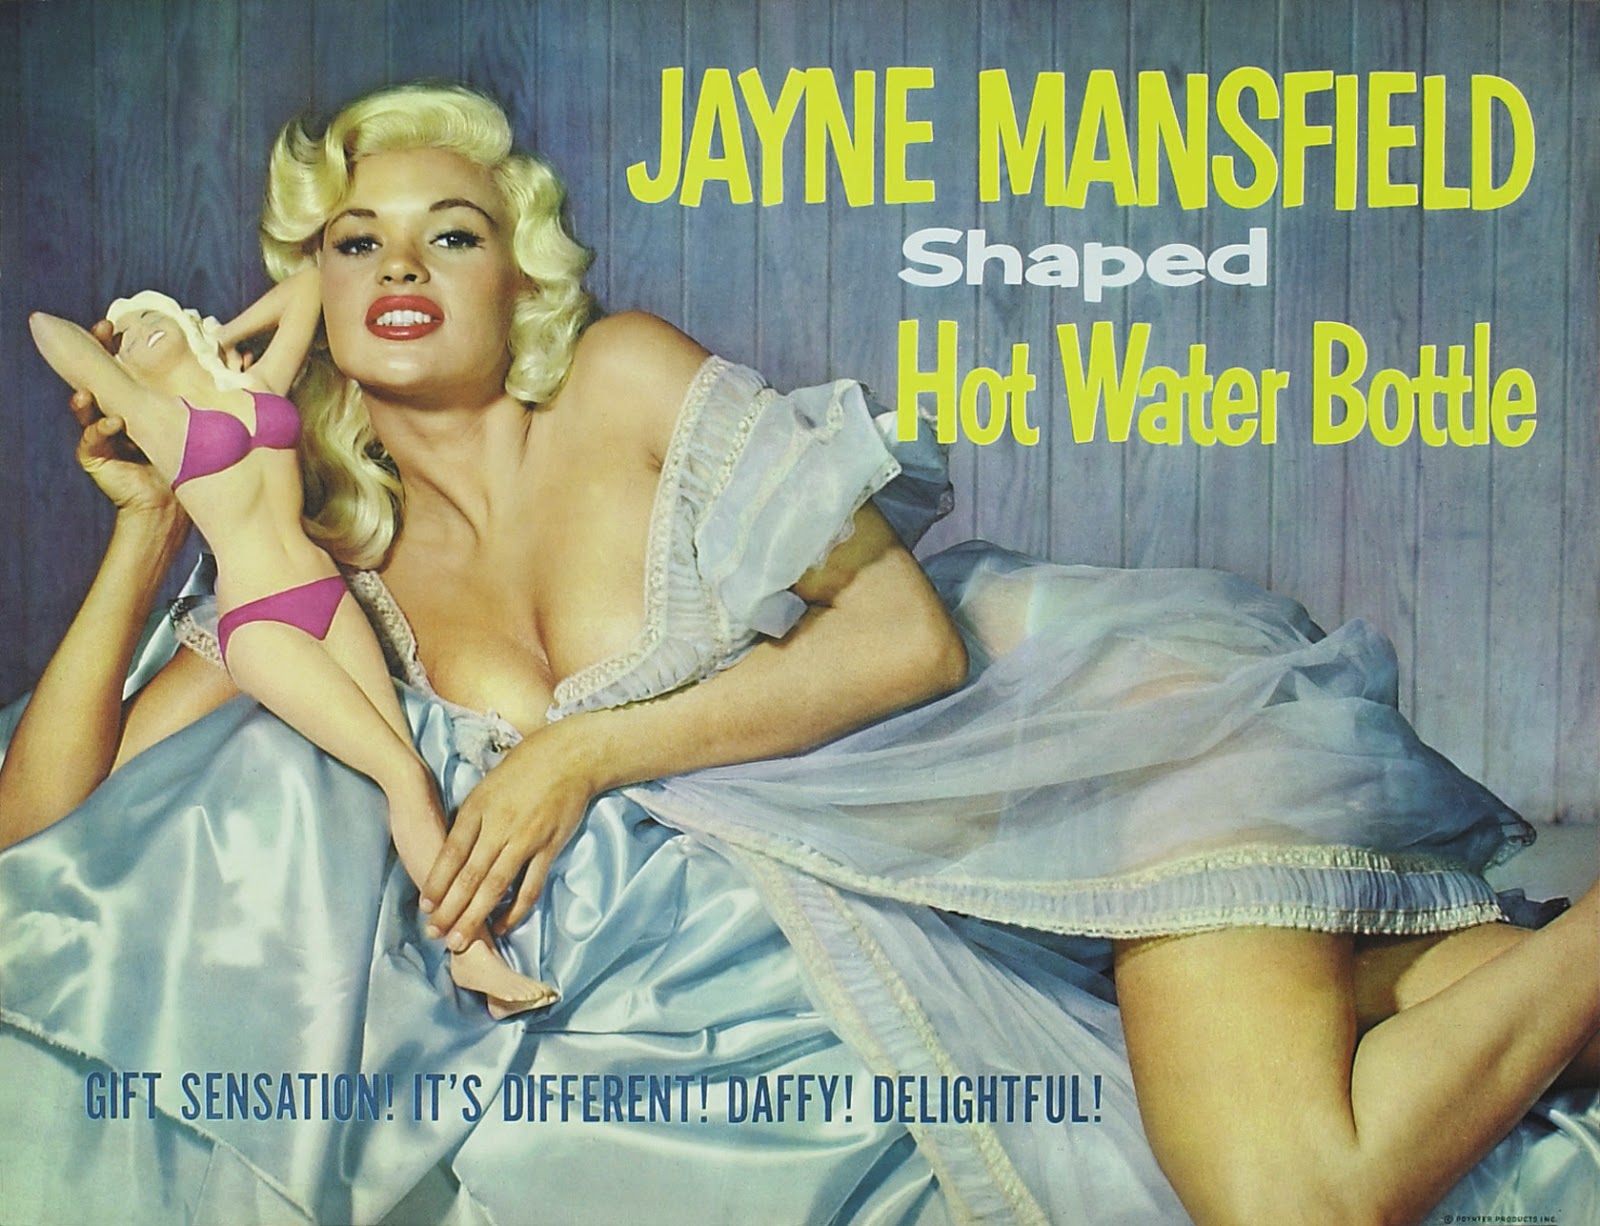 Jayne Mansfield hot water bottle art.